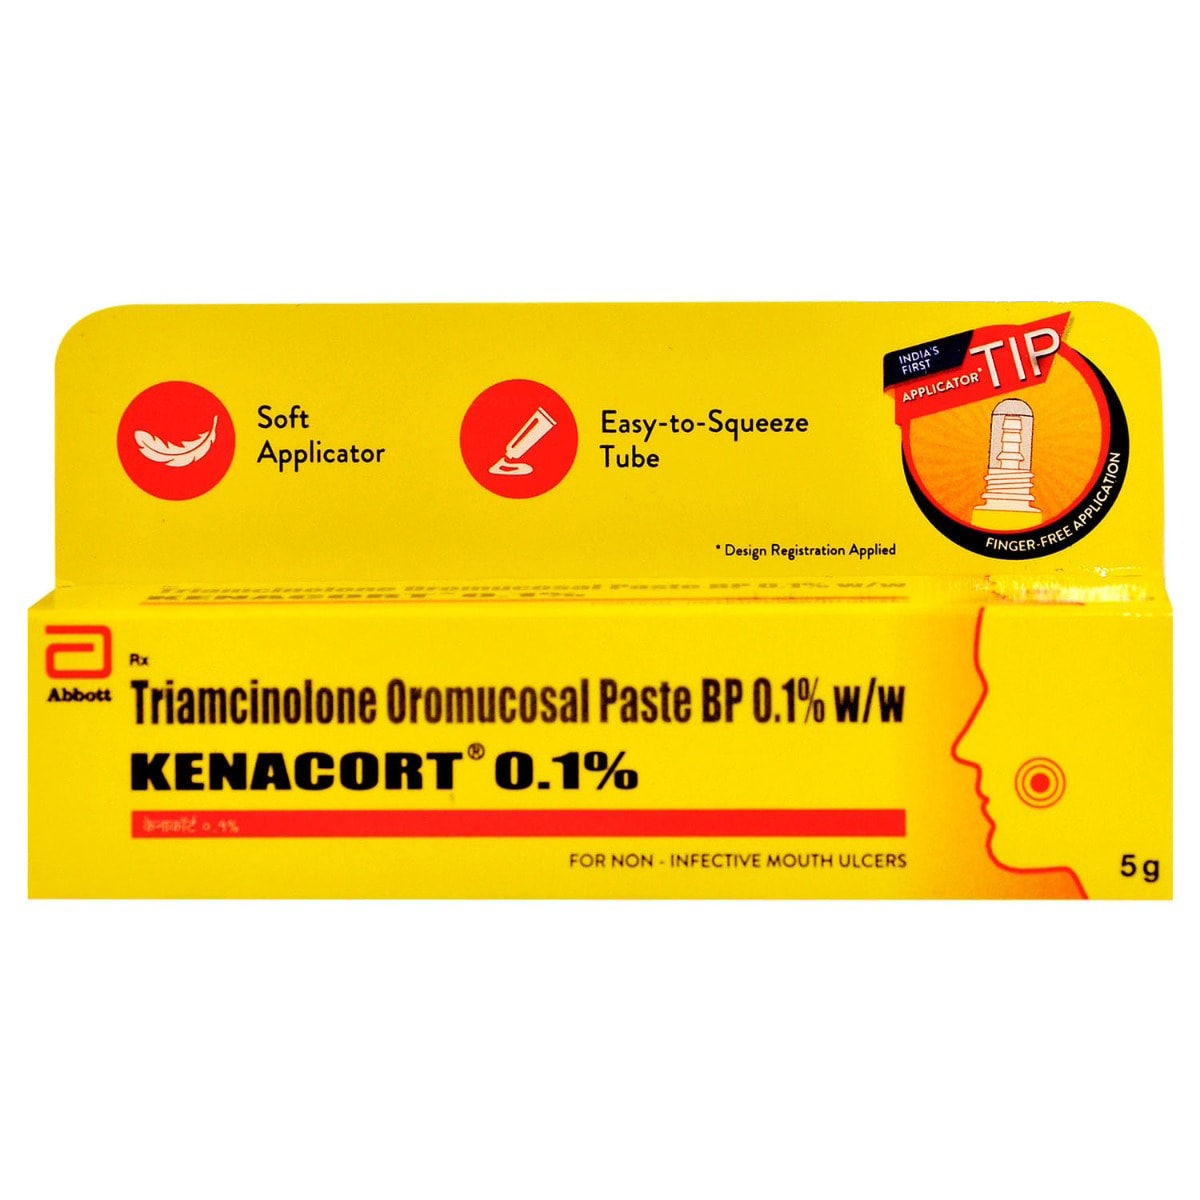 Buy Kenacort 0.1% Oral Paste 5 gm Online